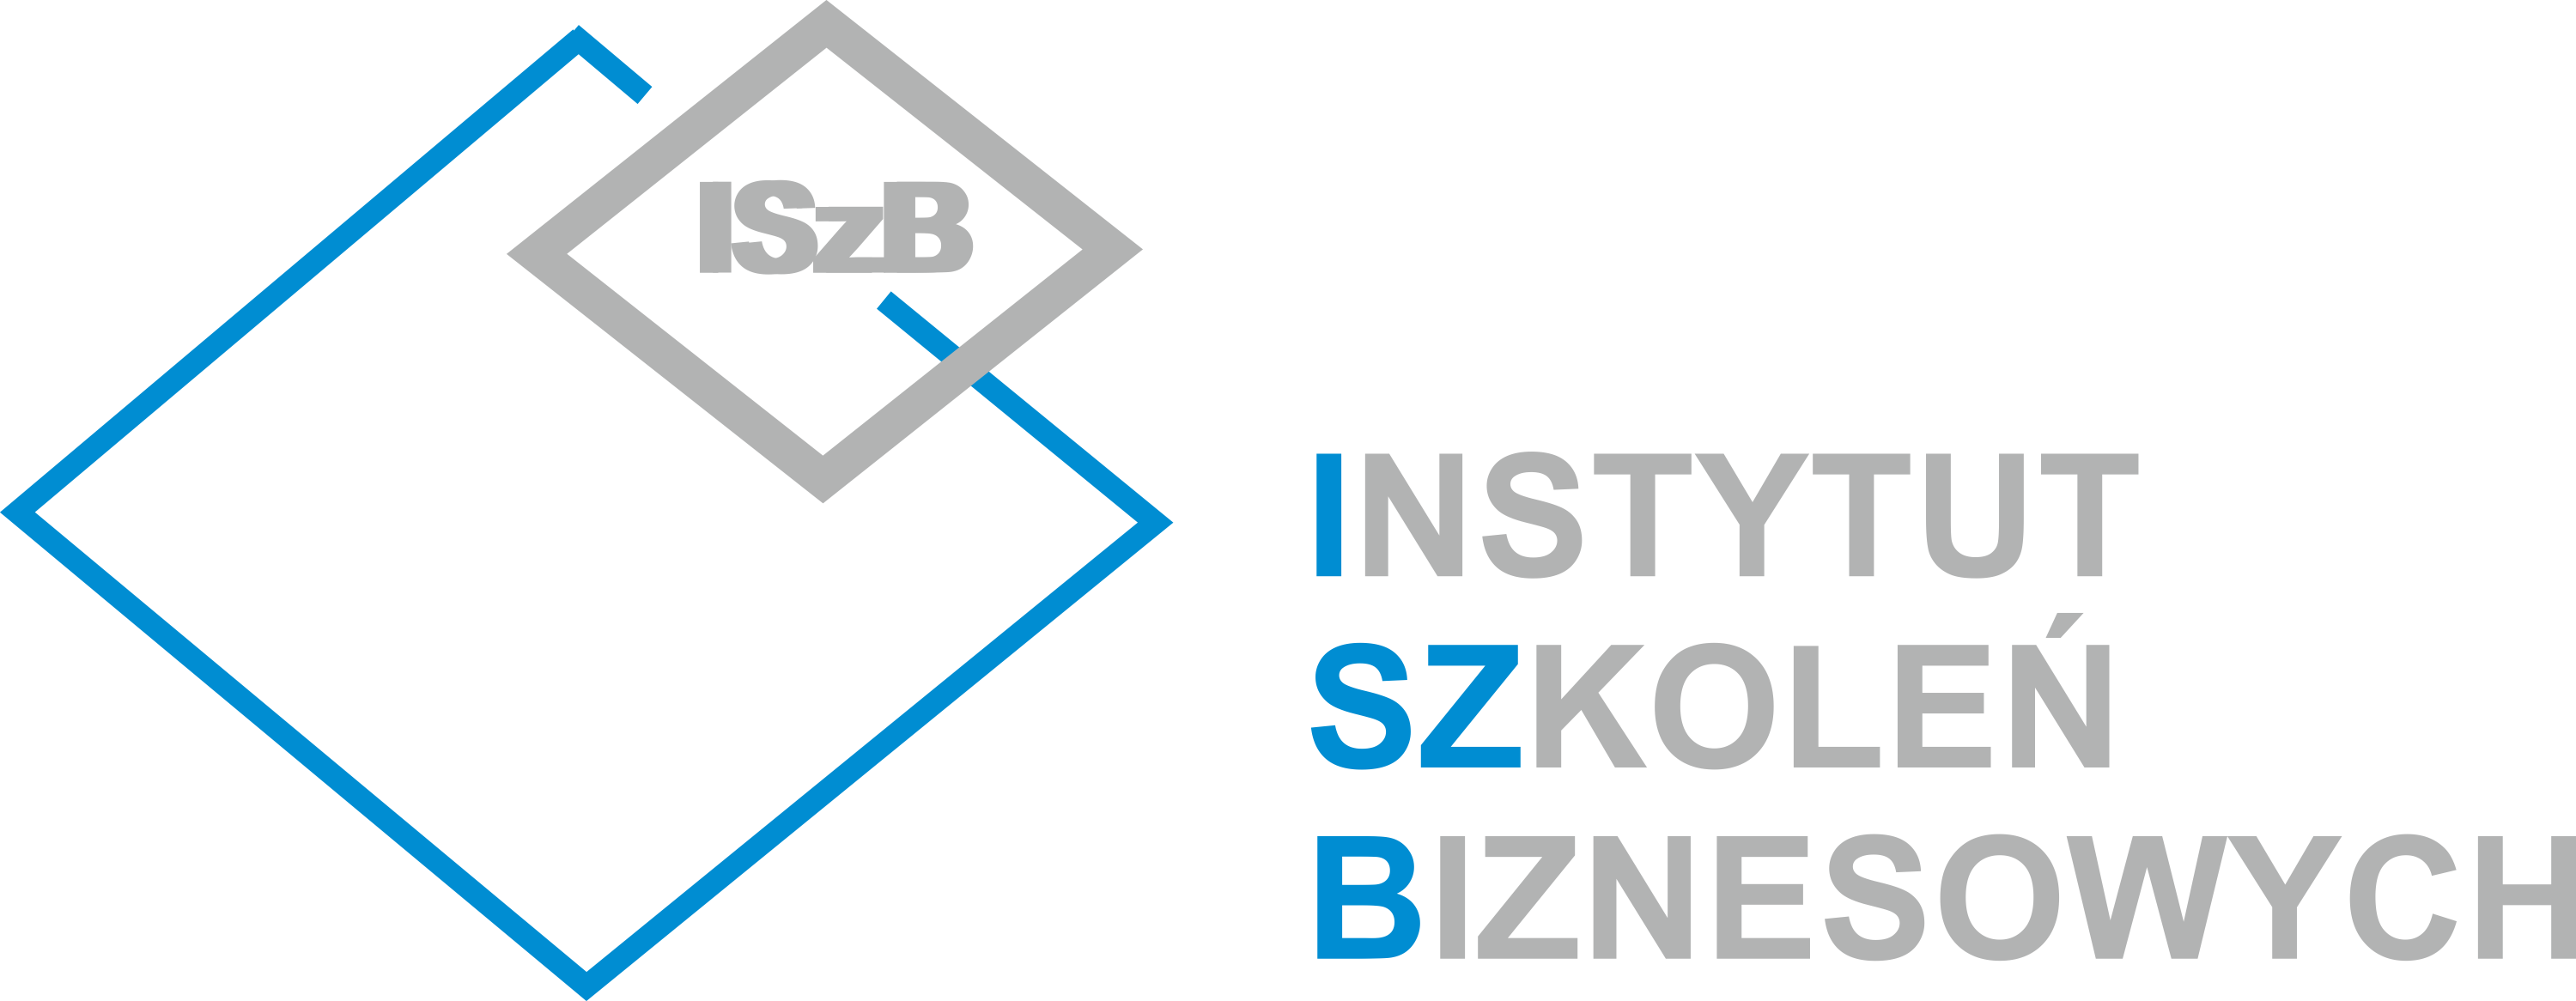 Logo Instytut Szkoleń Biznesowych Mariusz  Wiśniewski